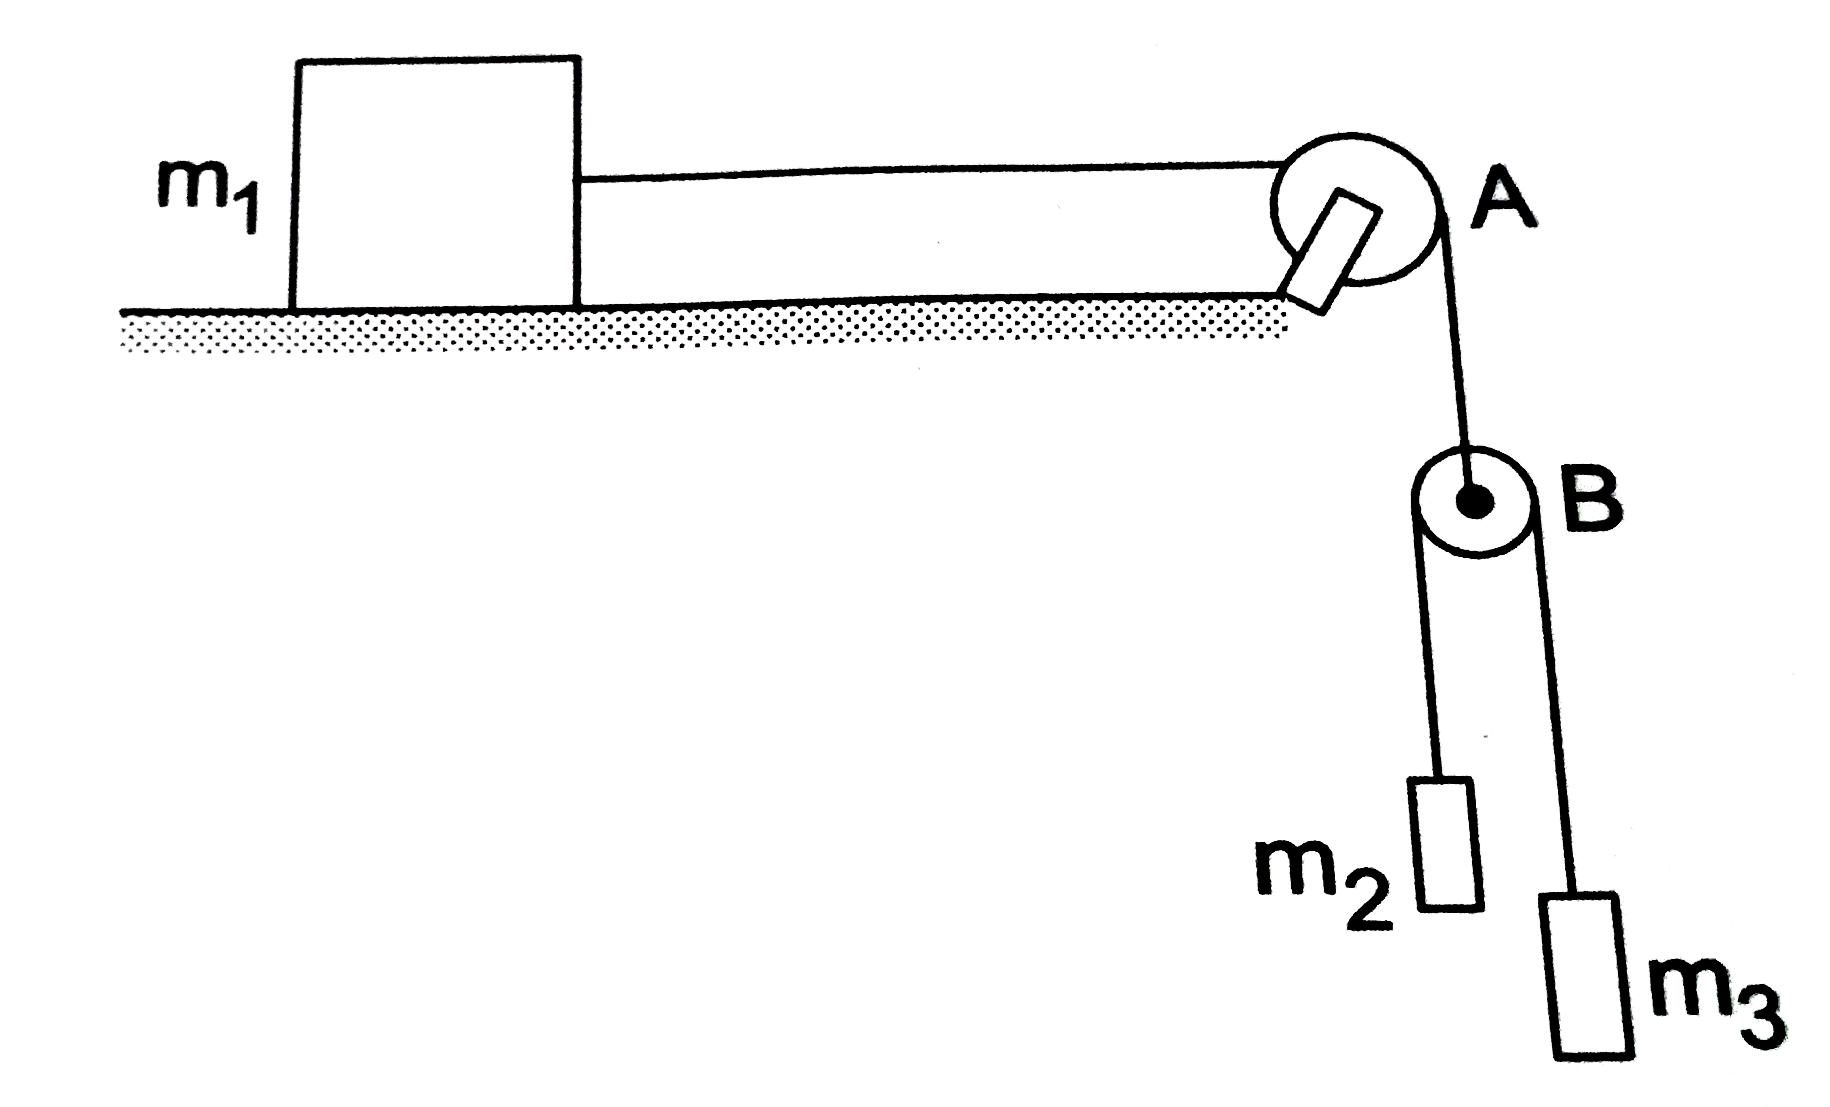 चित्र में दिखाए अनुसार तीन गुटके m(1),m(2) एवं m(3) आपस में डोरियों द्वारा जुड़े हुए हैं | सभी सतहें घर्षणरहित हैं तथा डोरियों एवं घिरनियों के भार नगण्य हैं | गुटके m(1) का त्वरण ज्ञात करें |